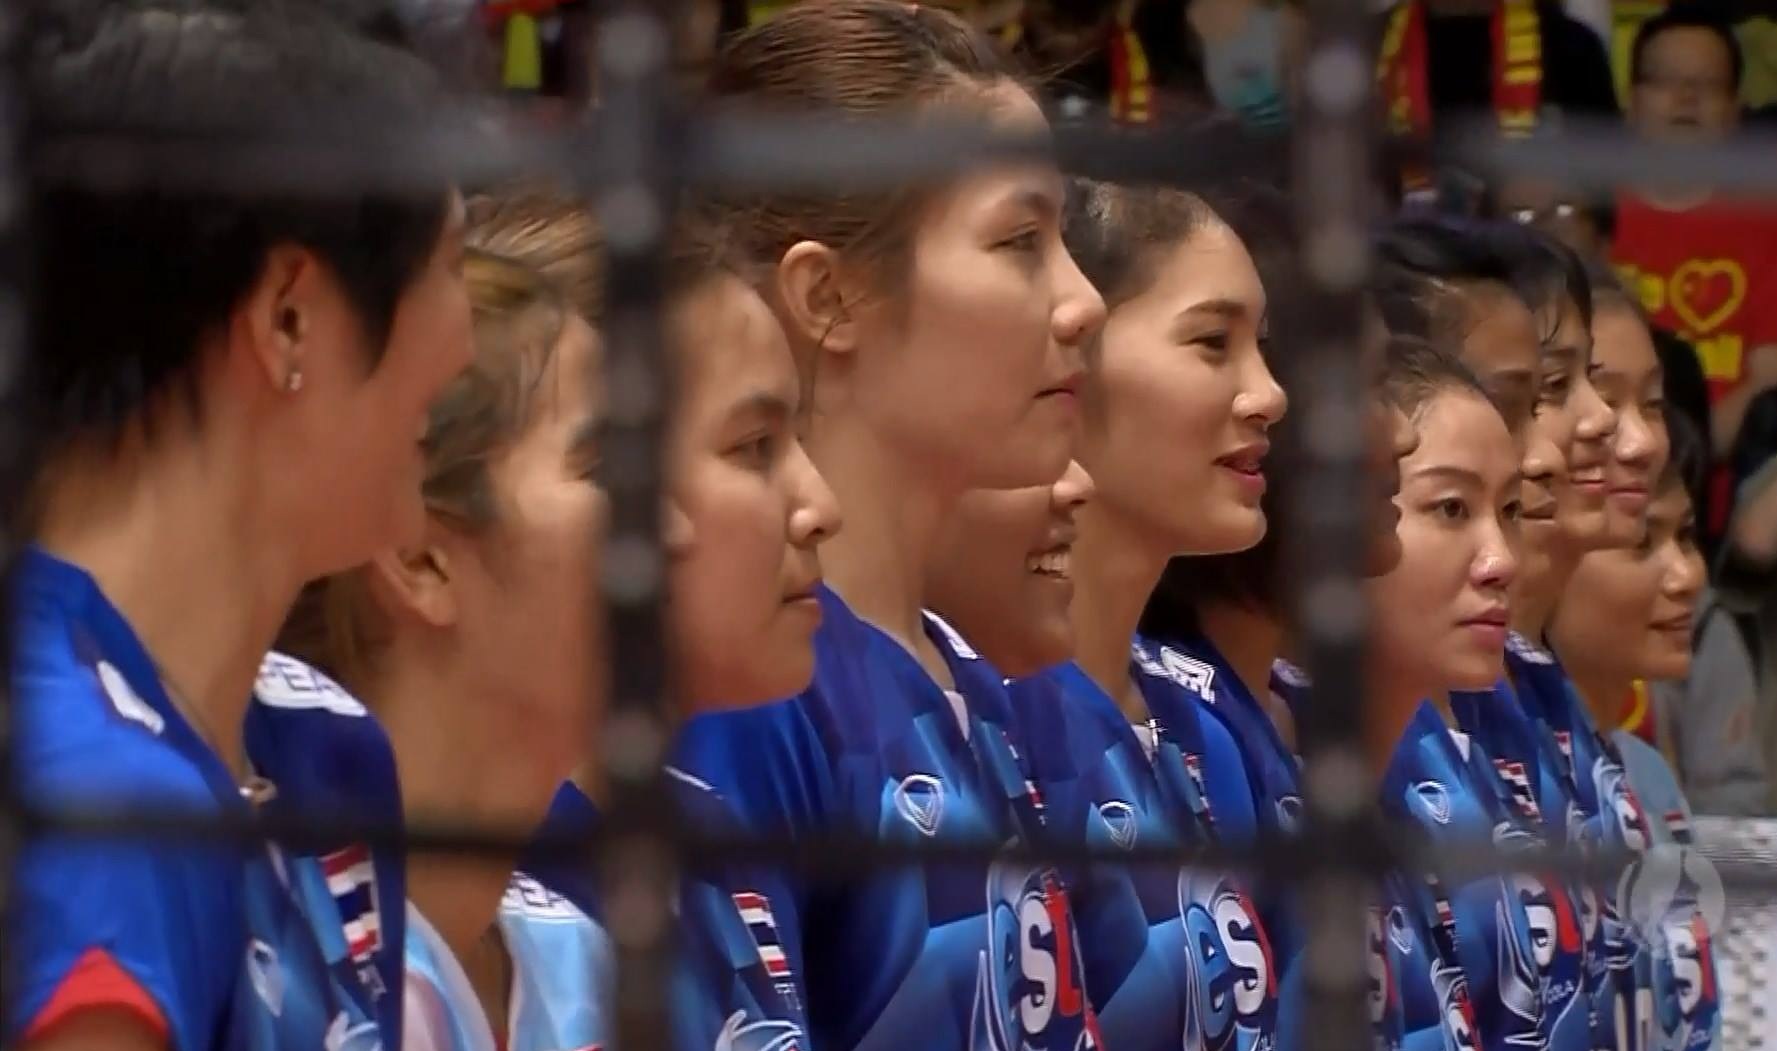 ทำดีที่สุดแล้ว!! ตบสาวไทยพ่ายจีน 0-3 คว้ารองแชมป์ วอลเลย์บอลหญิง มองเทรอซ์ฯ (มีคลิป)